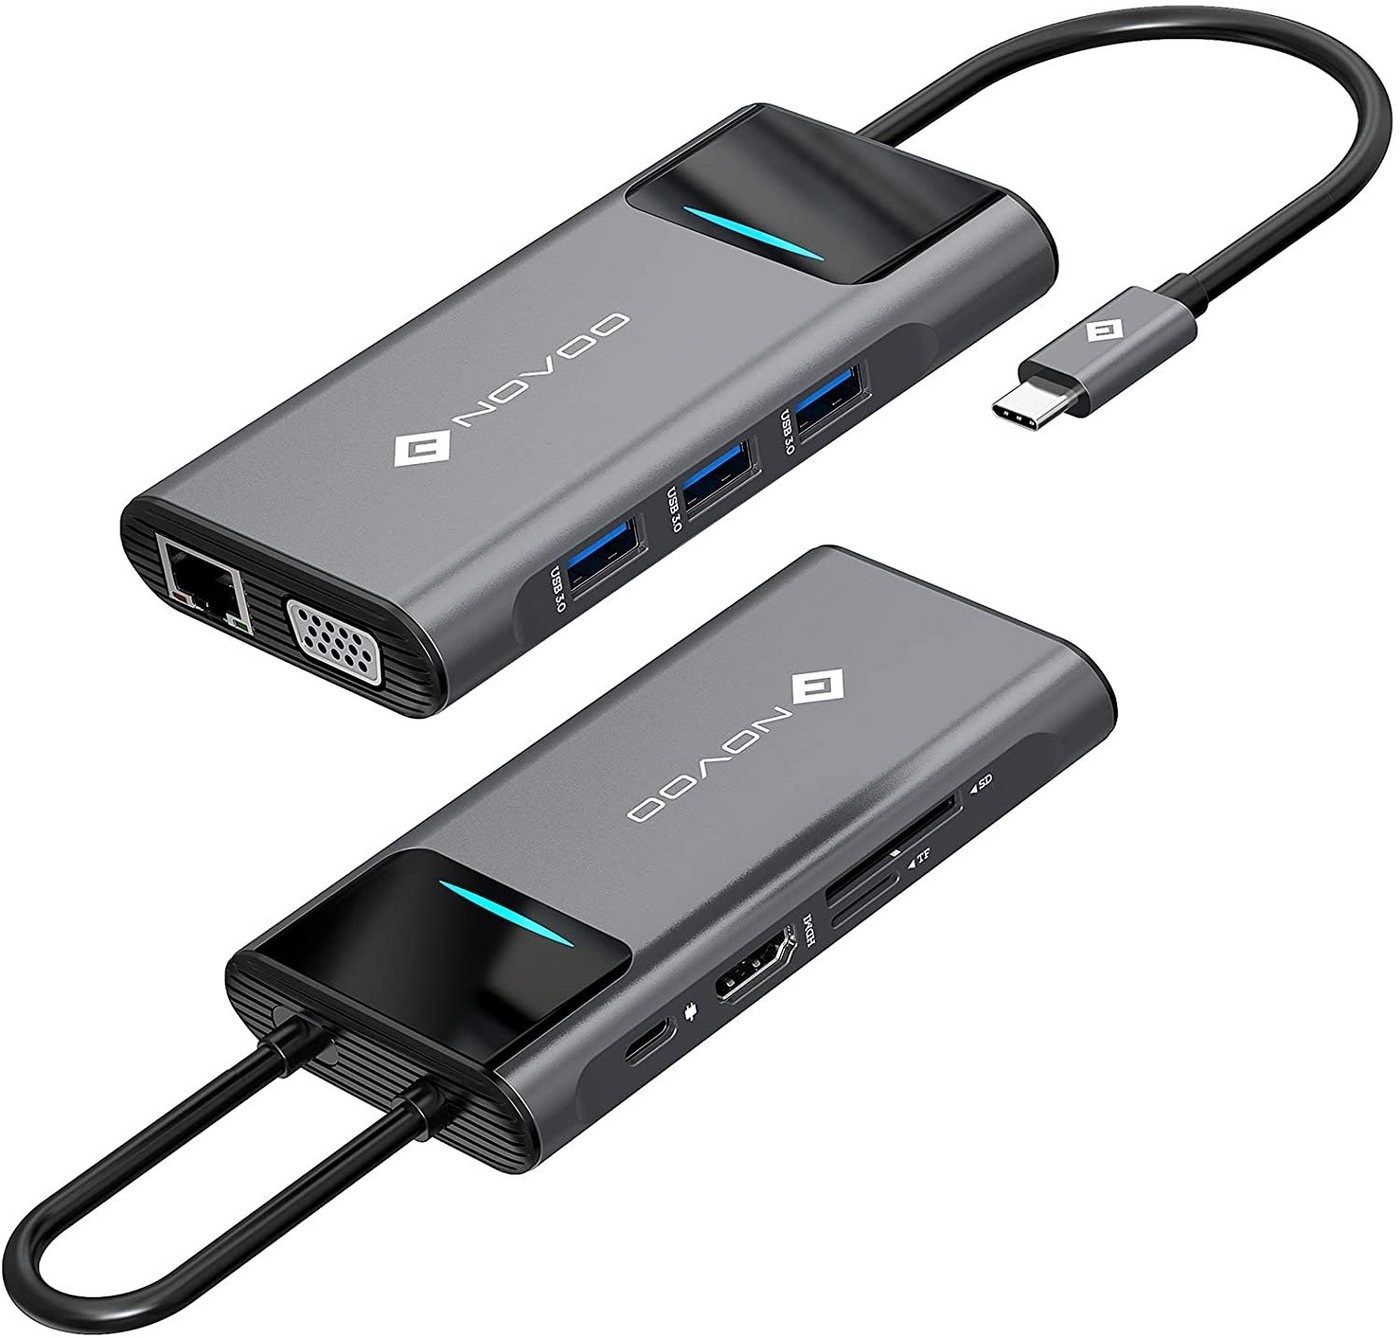 NOVOO 9 in 1 Adapter für technische Geräte, Anschlusserweiterung für den PC USB-Adapter USB-C zu HDMI 4K, TF/SD Card Reader, VGA, RJ45 Gigabit Ethernet, 3xUSB 3.0, USB-C, Kompatibel mit Windows Laptop, Tablet, MacBook & Ipad von NOVOO